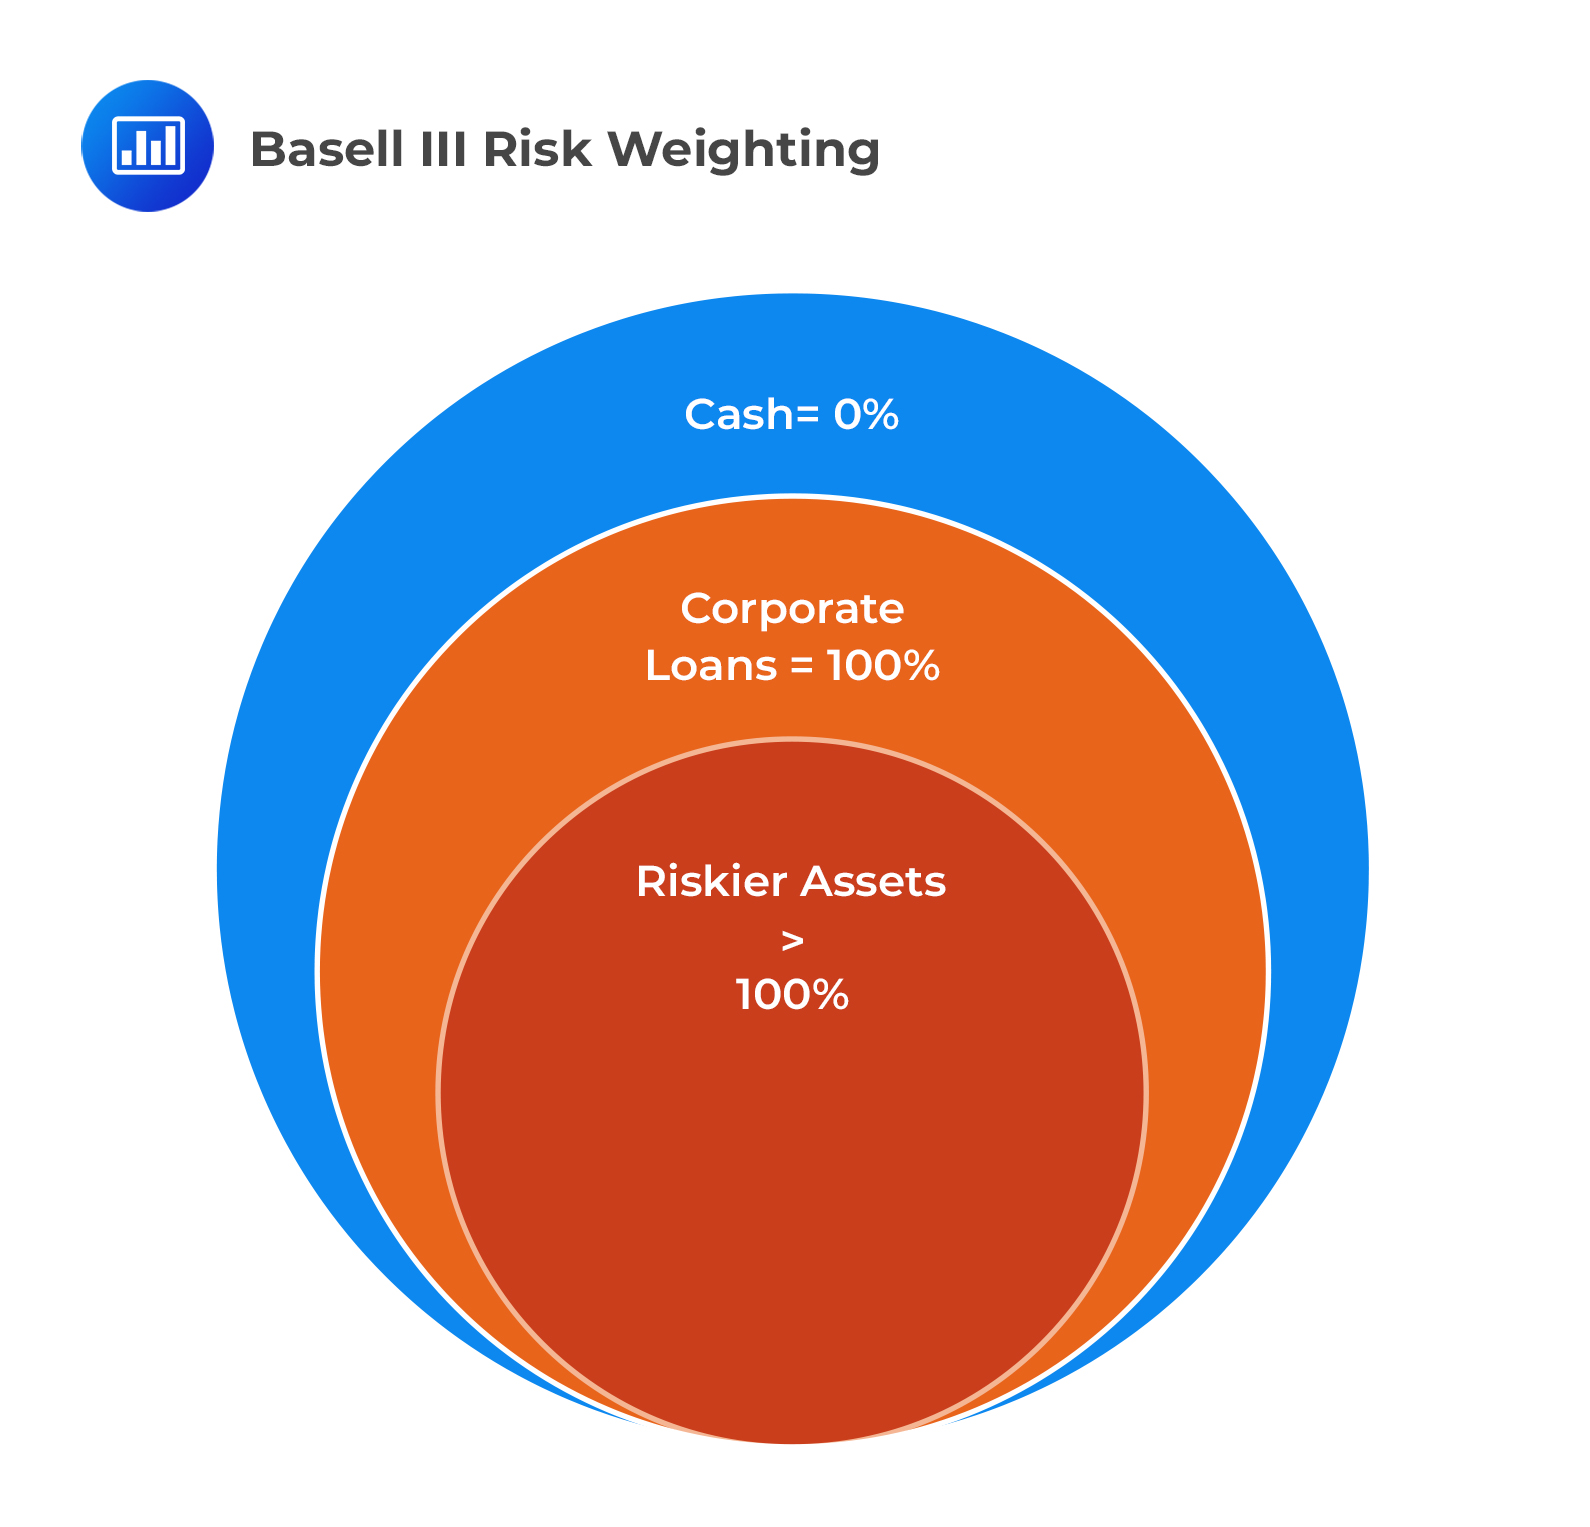 Basell III Risk Weighting